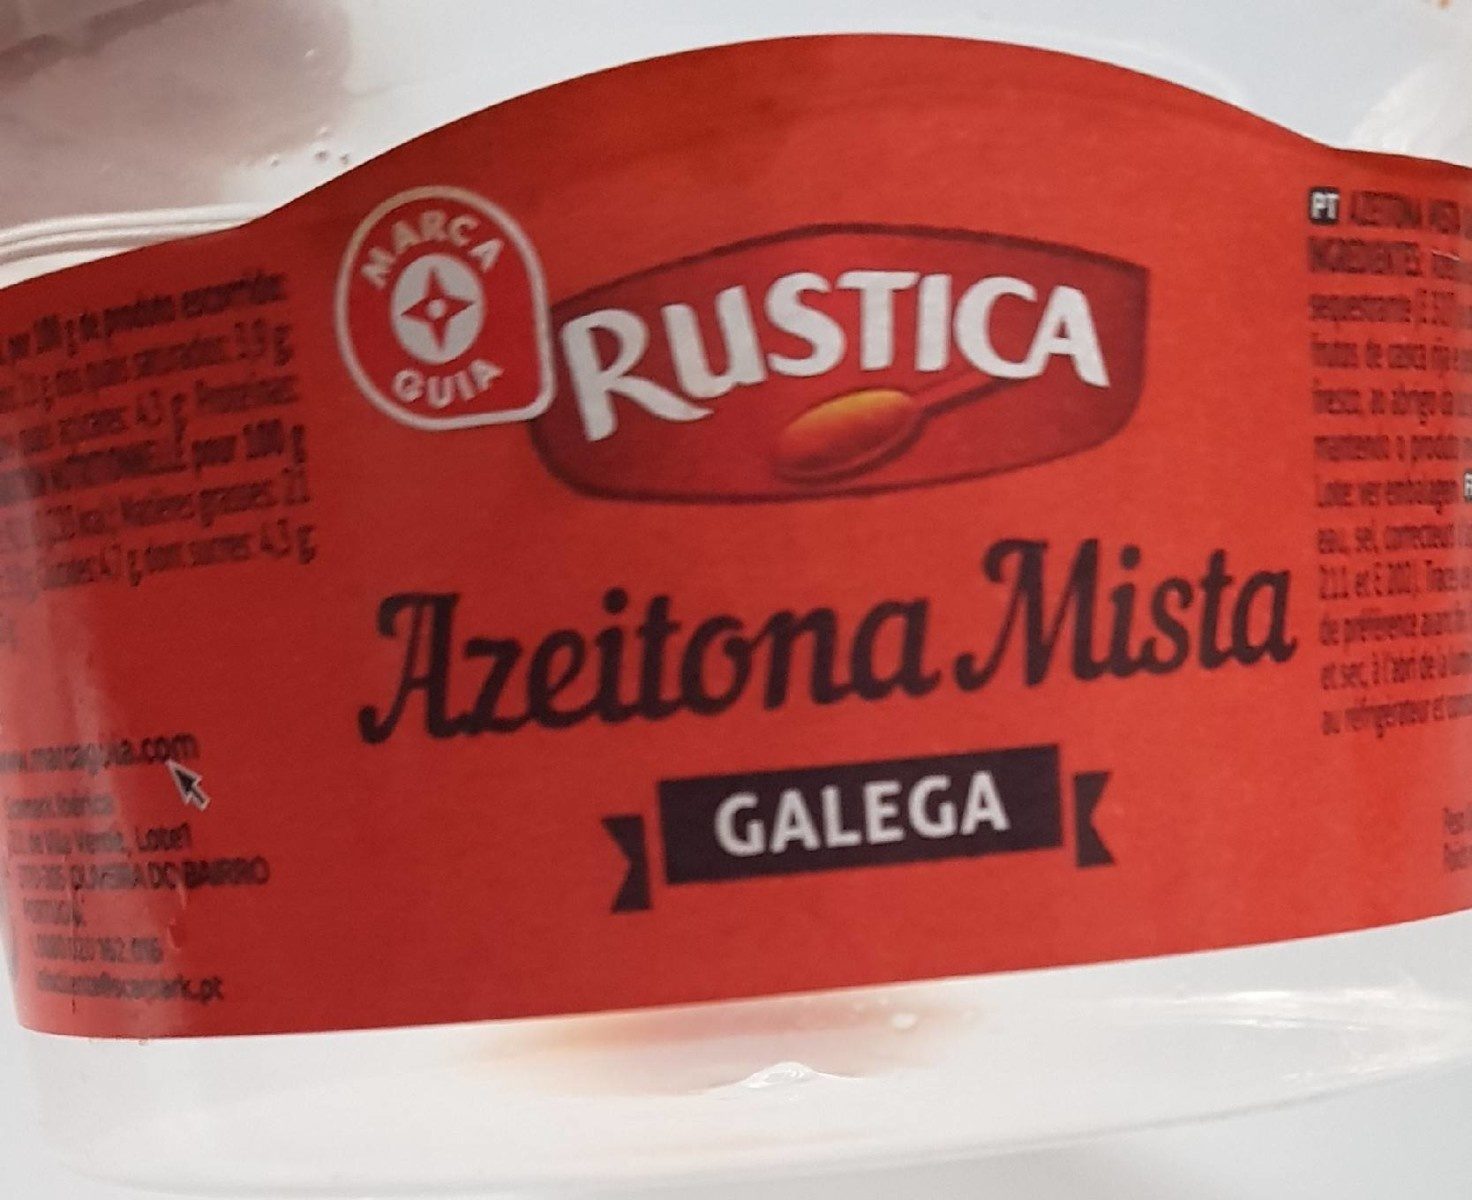 Azeitona Mista Galega - Product - pt